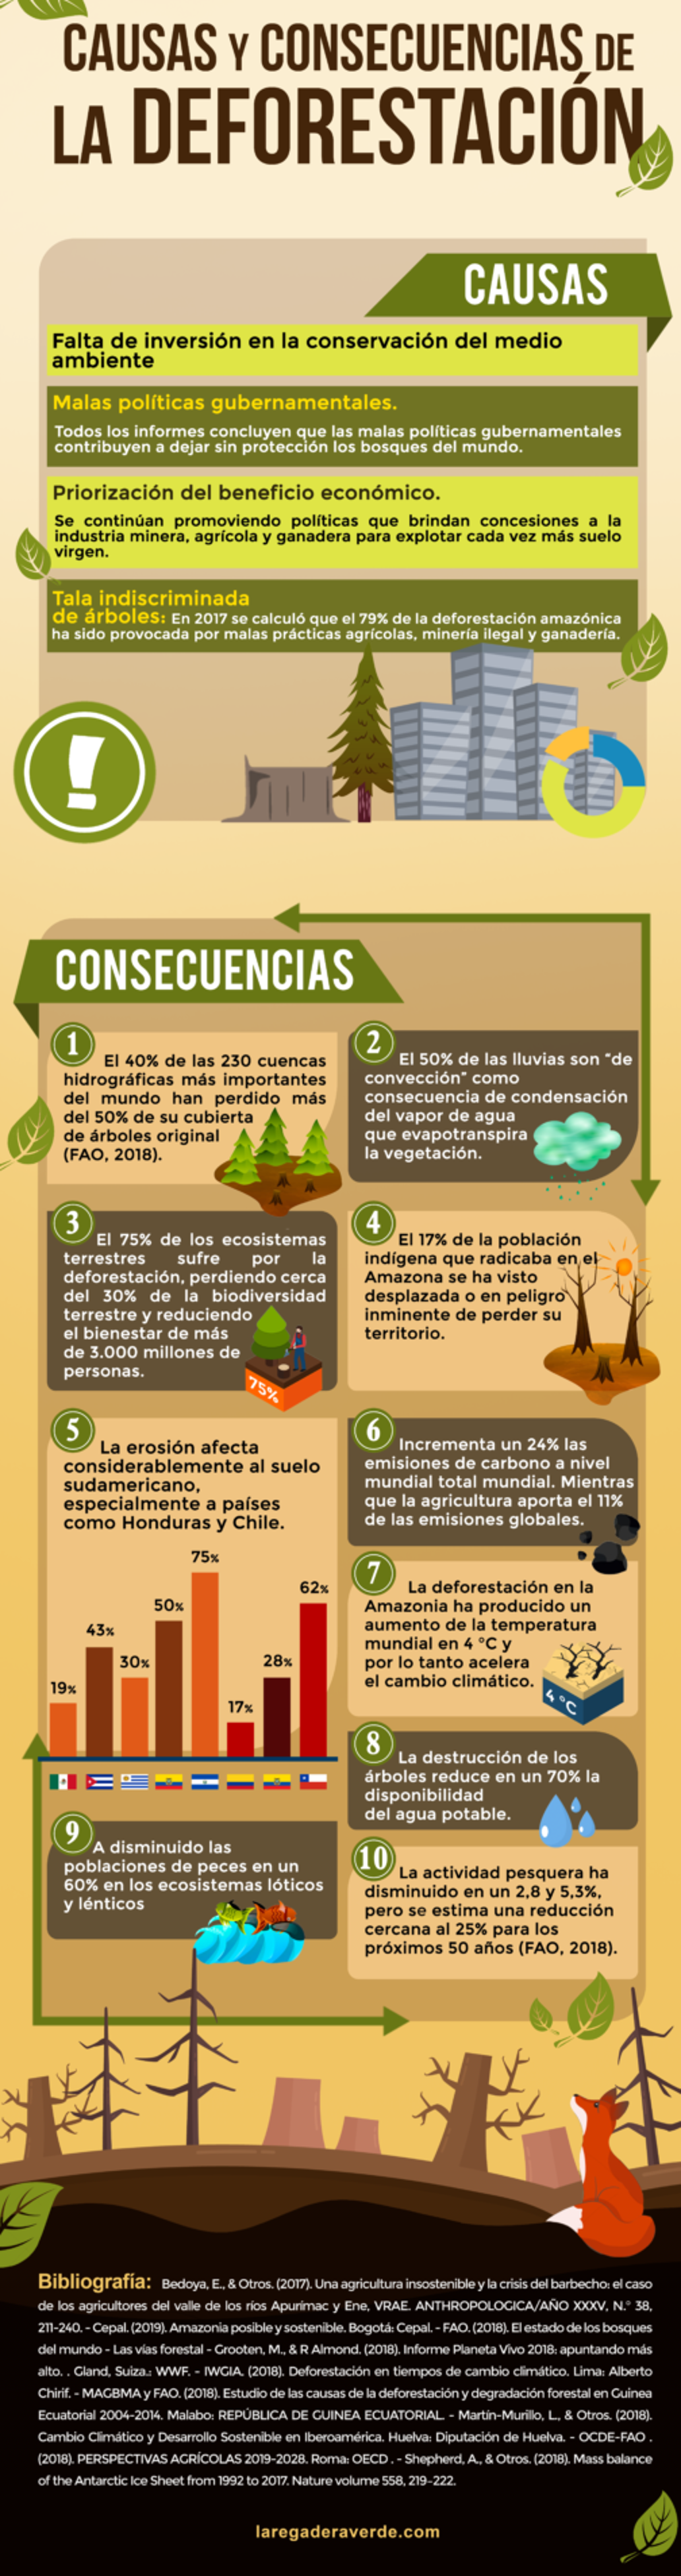 Deforestación, causas y consecuencias